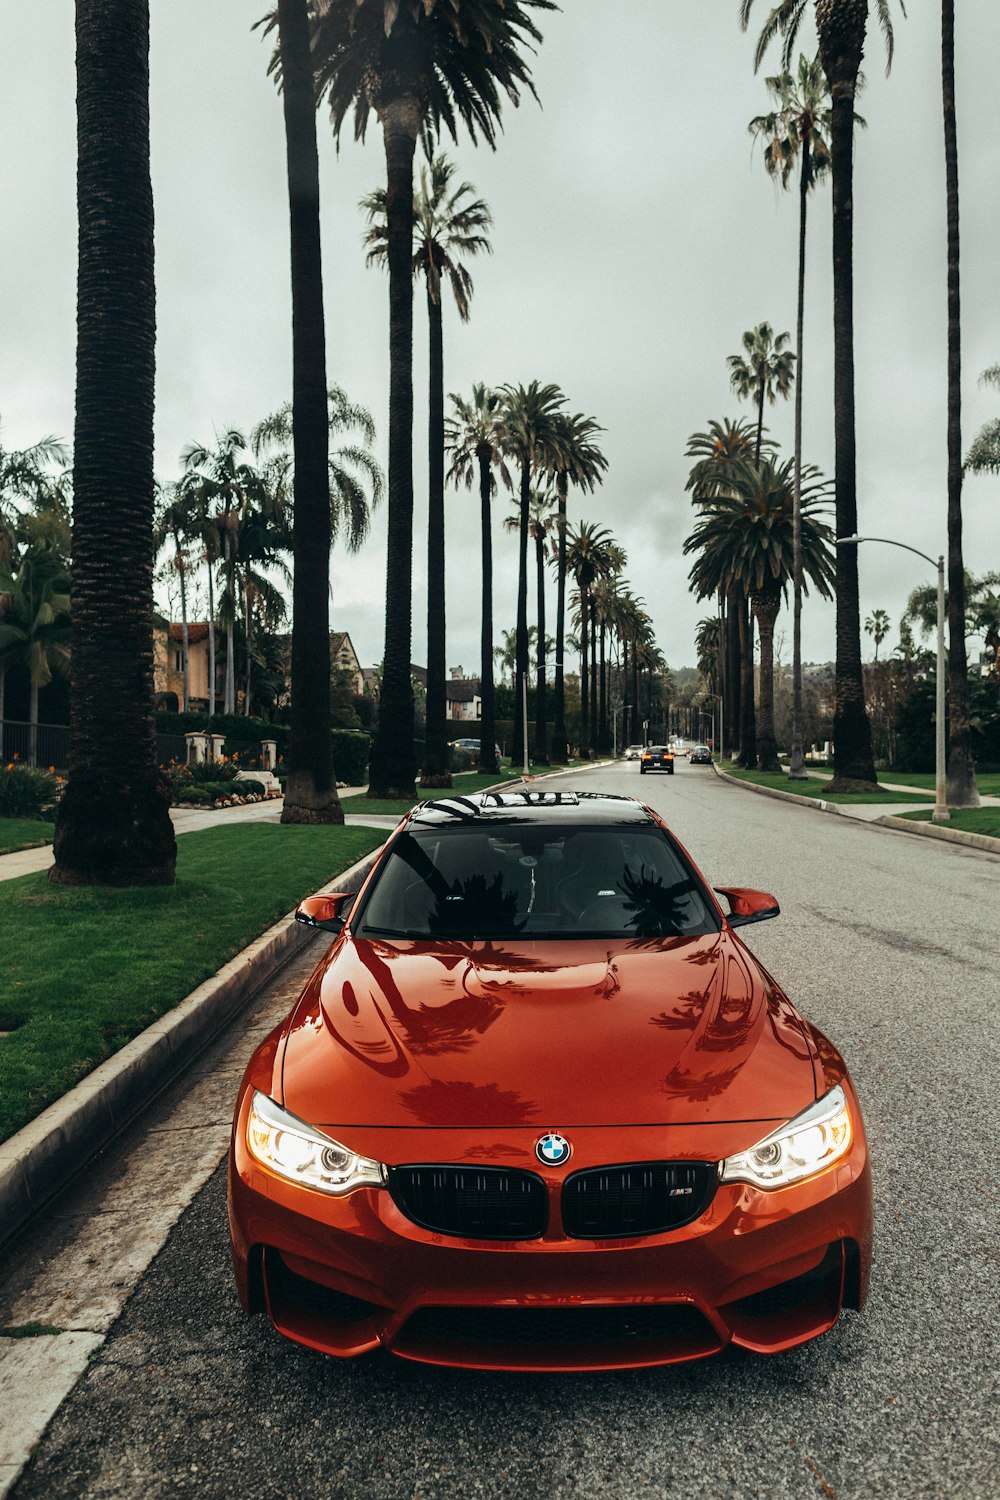 BMW coupé rossa parcheggiata sulla strada